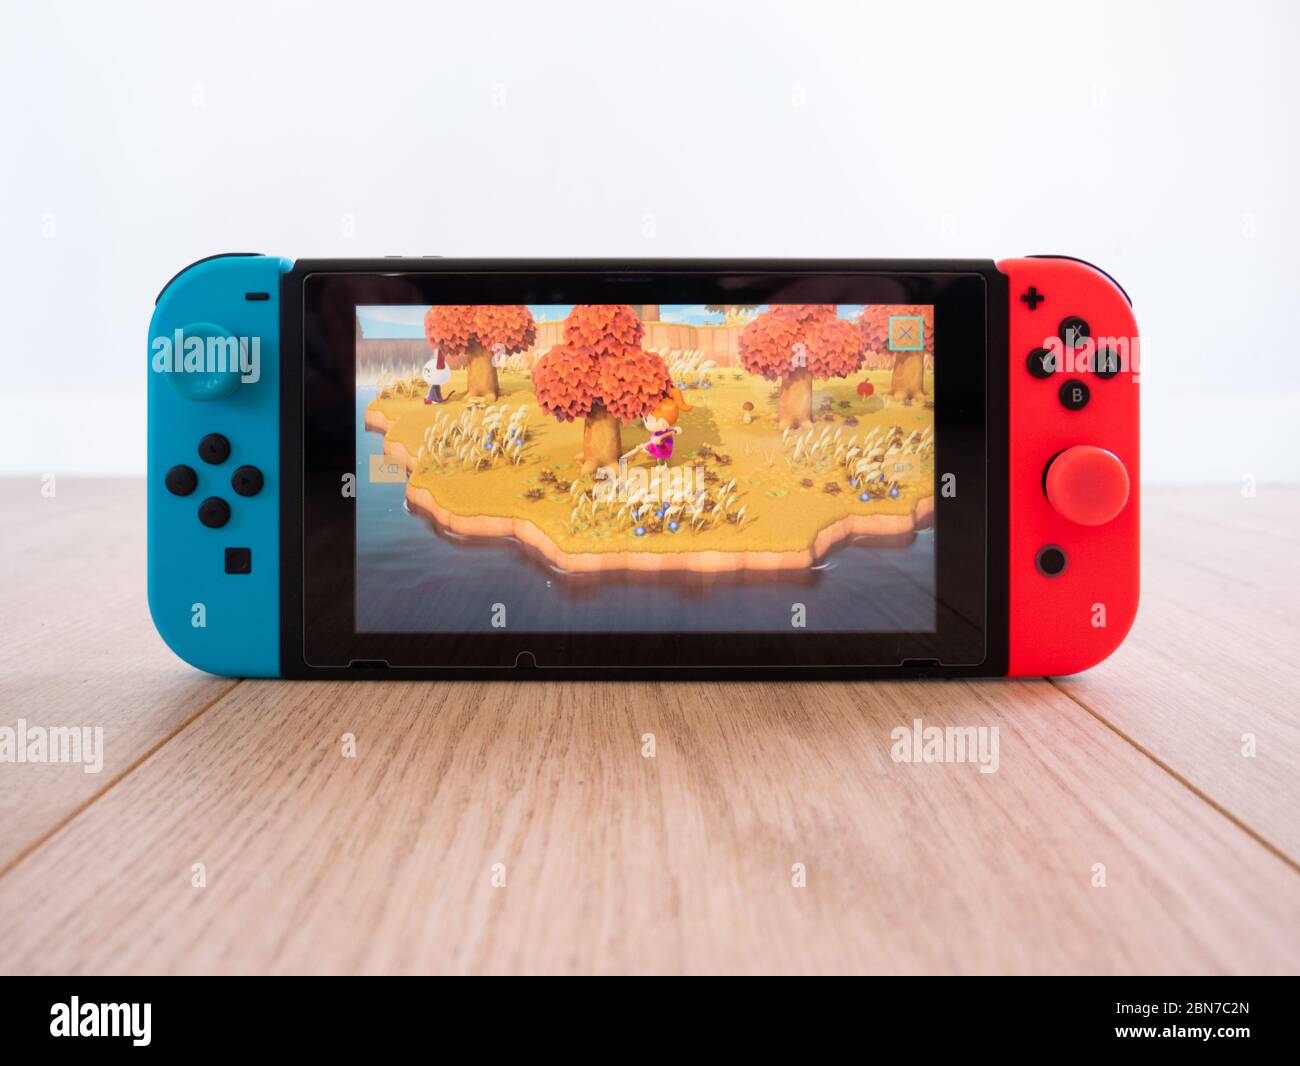 Mai 2020, Royaume-Uni: Console de jeux Nintendo Switch animaux croisant de  nouveaux horizons sur parquet blanc studio Photo Stock - Alamy